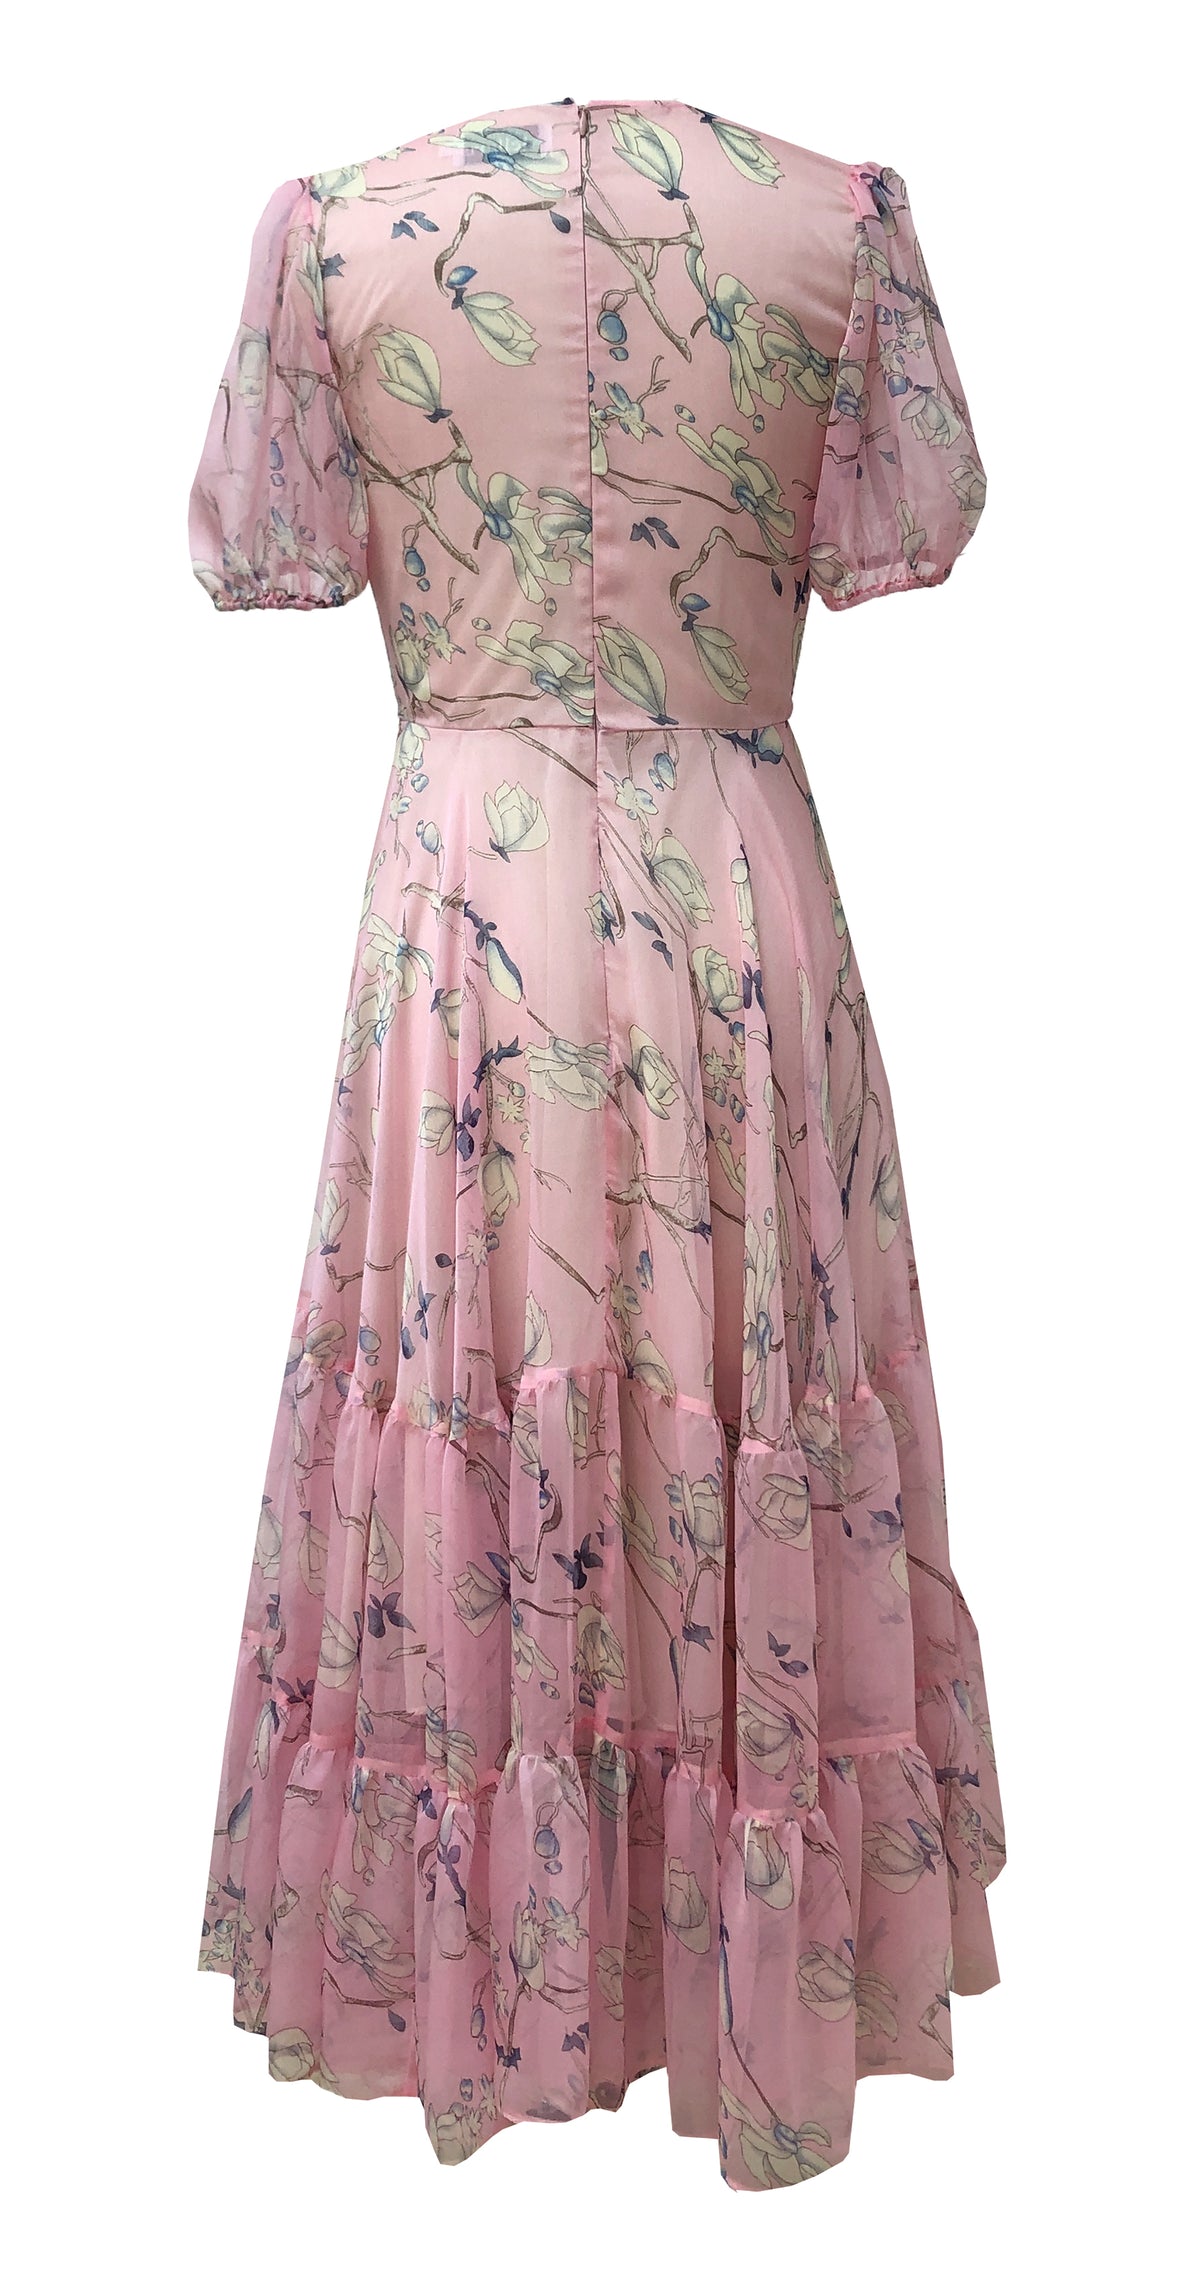 Kendra Dress DRC359 Pink Oriental Print Chiffon